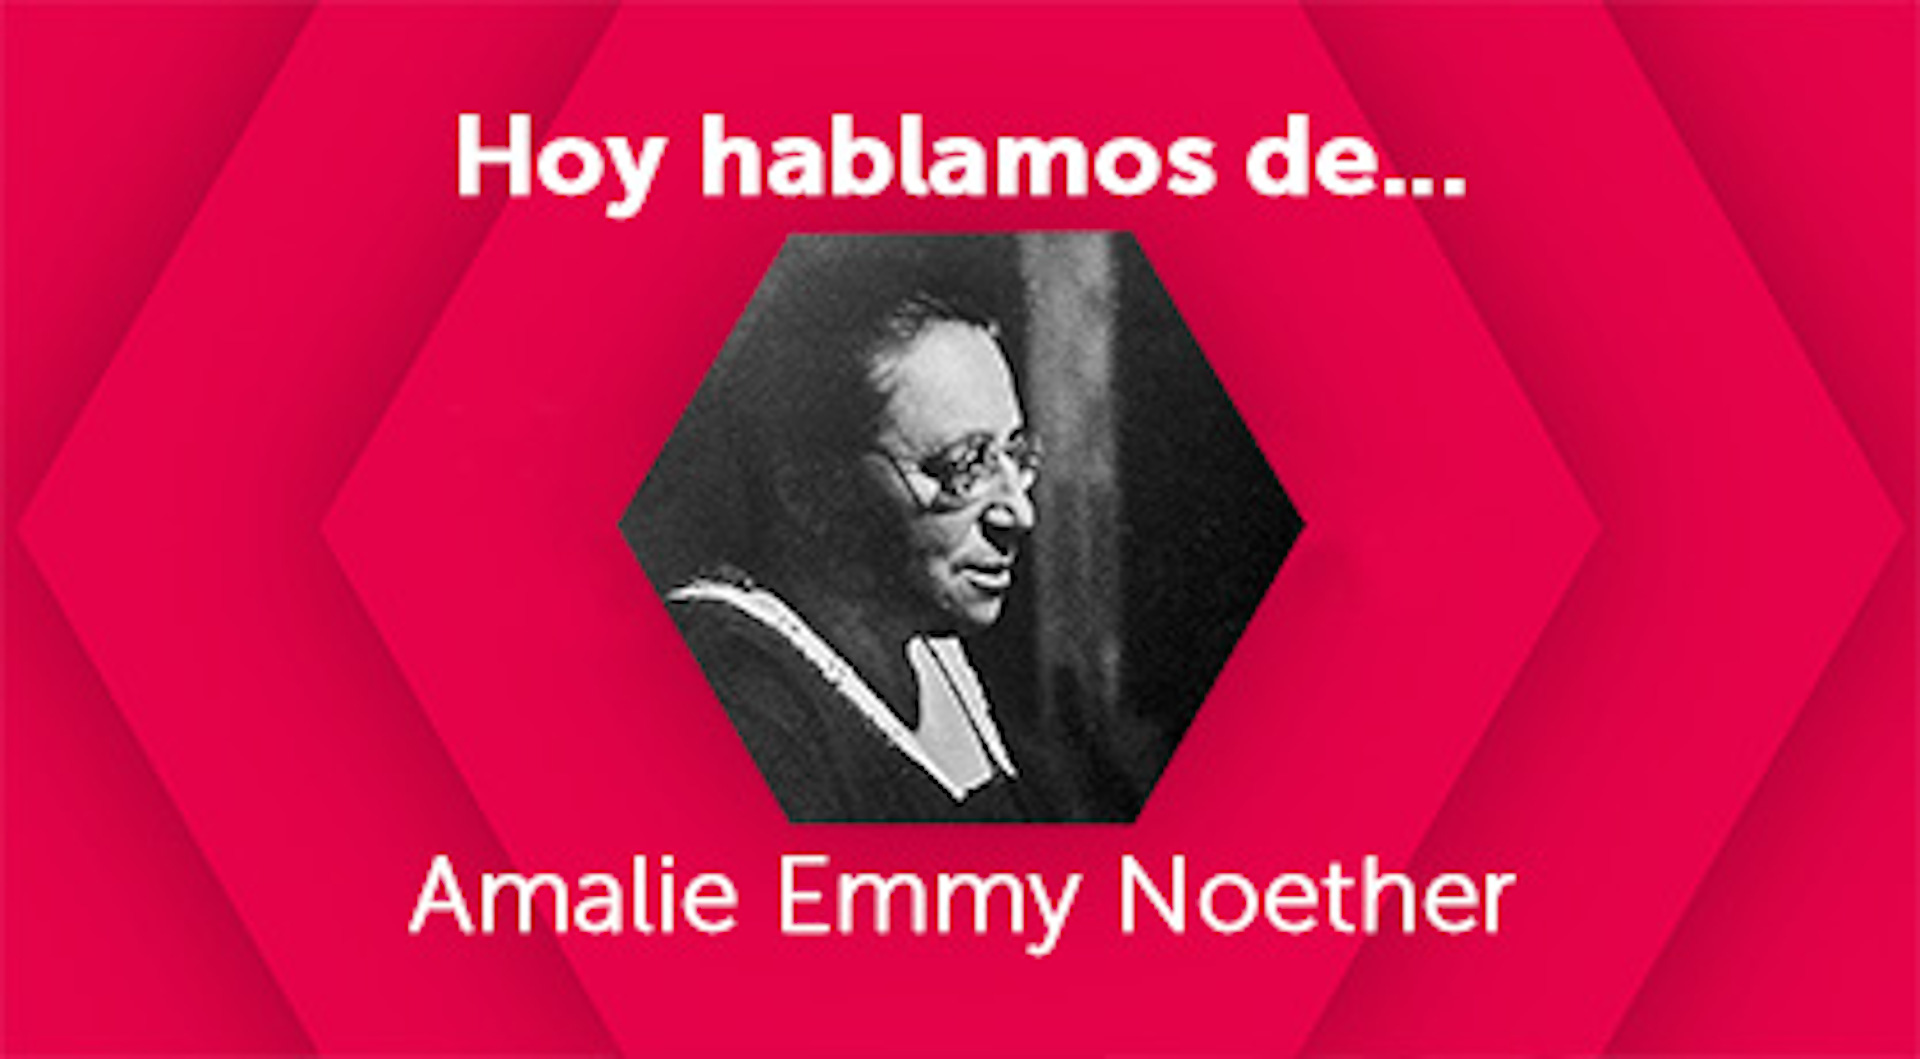 Hoy hablamos de Amalie Emmy Noether